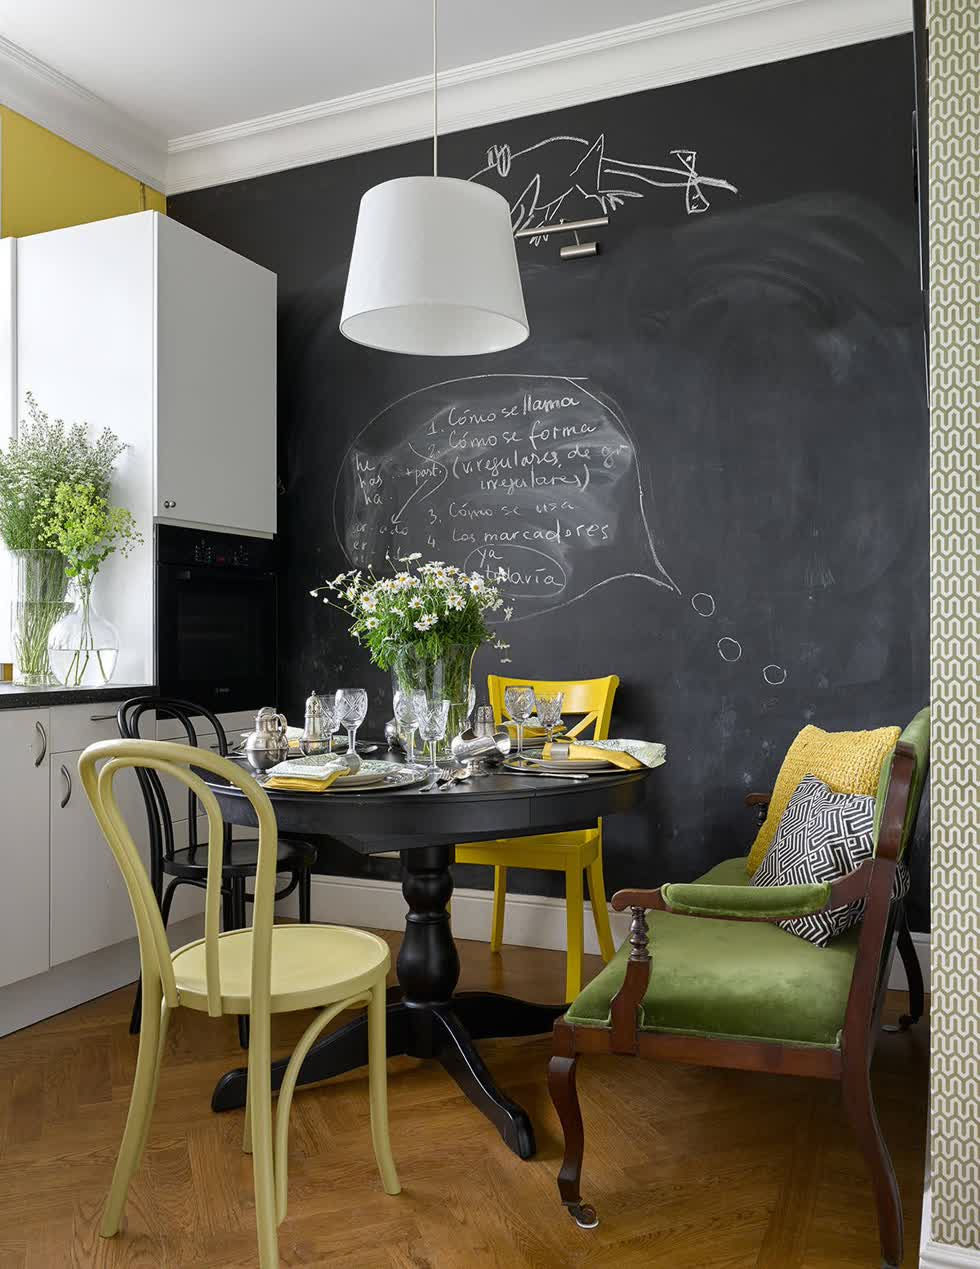   Bức tường bảng đen và chiếc ghế màu vàng tuyệt đẹp cho nhà bếp nhỏ.  